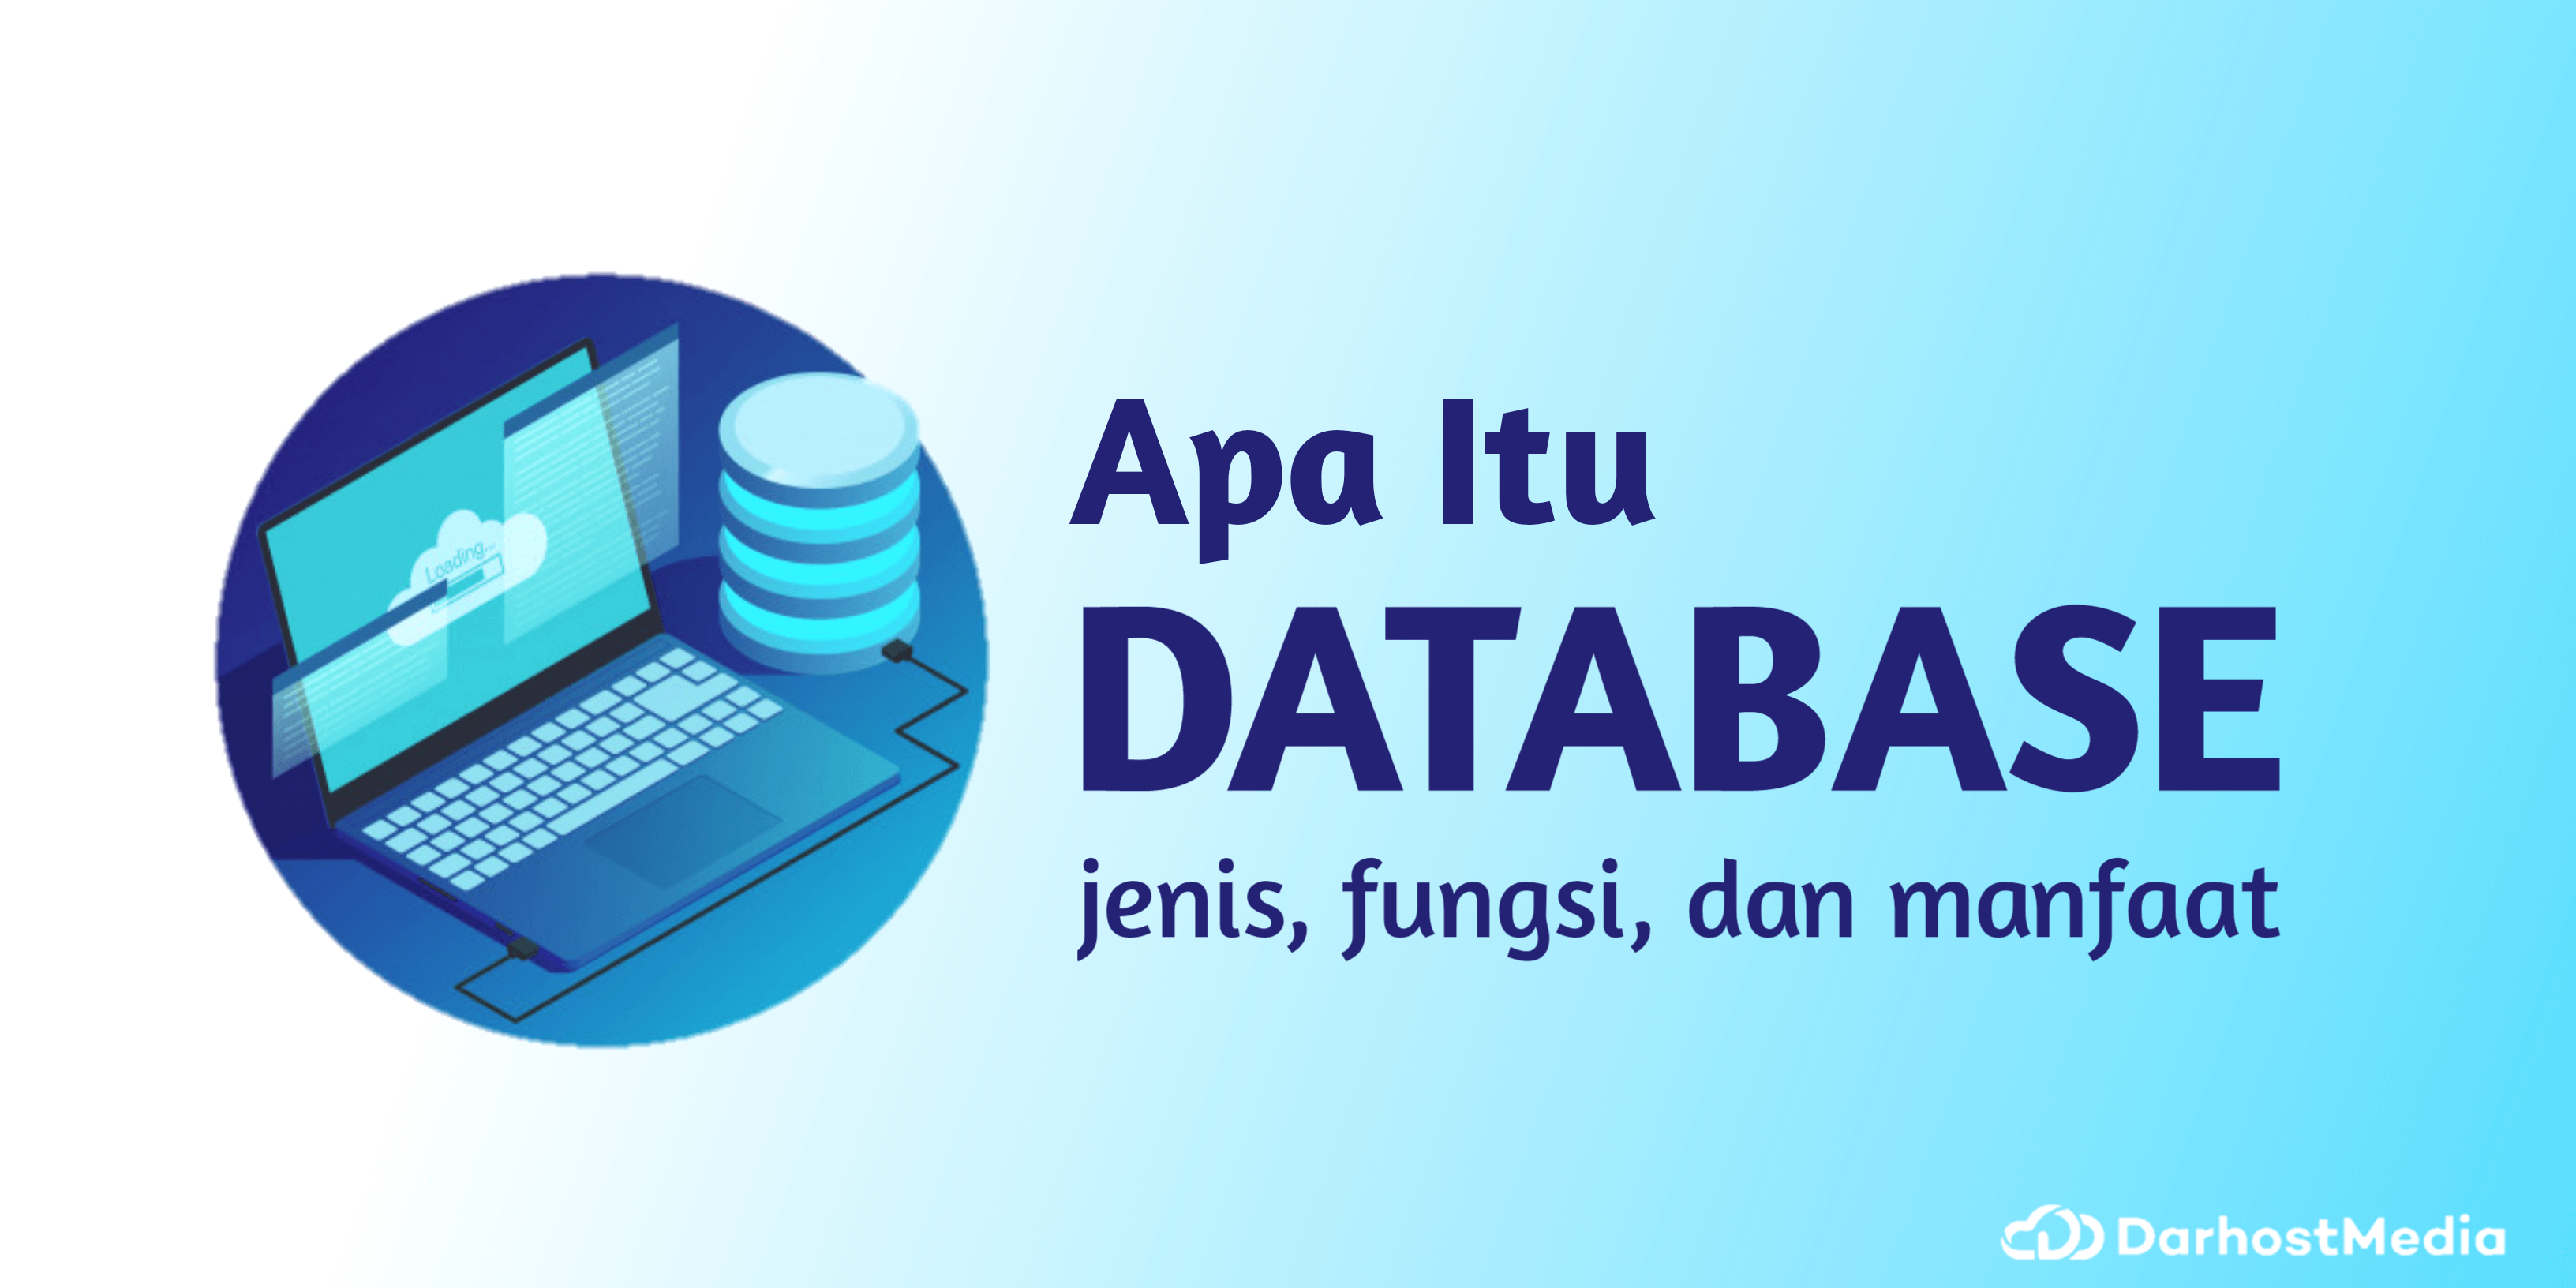 Apa itu Database?